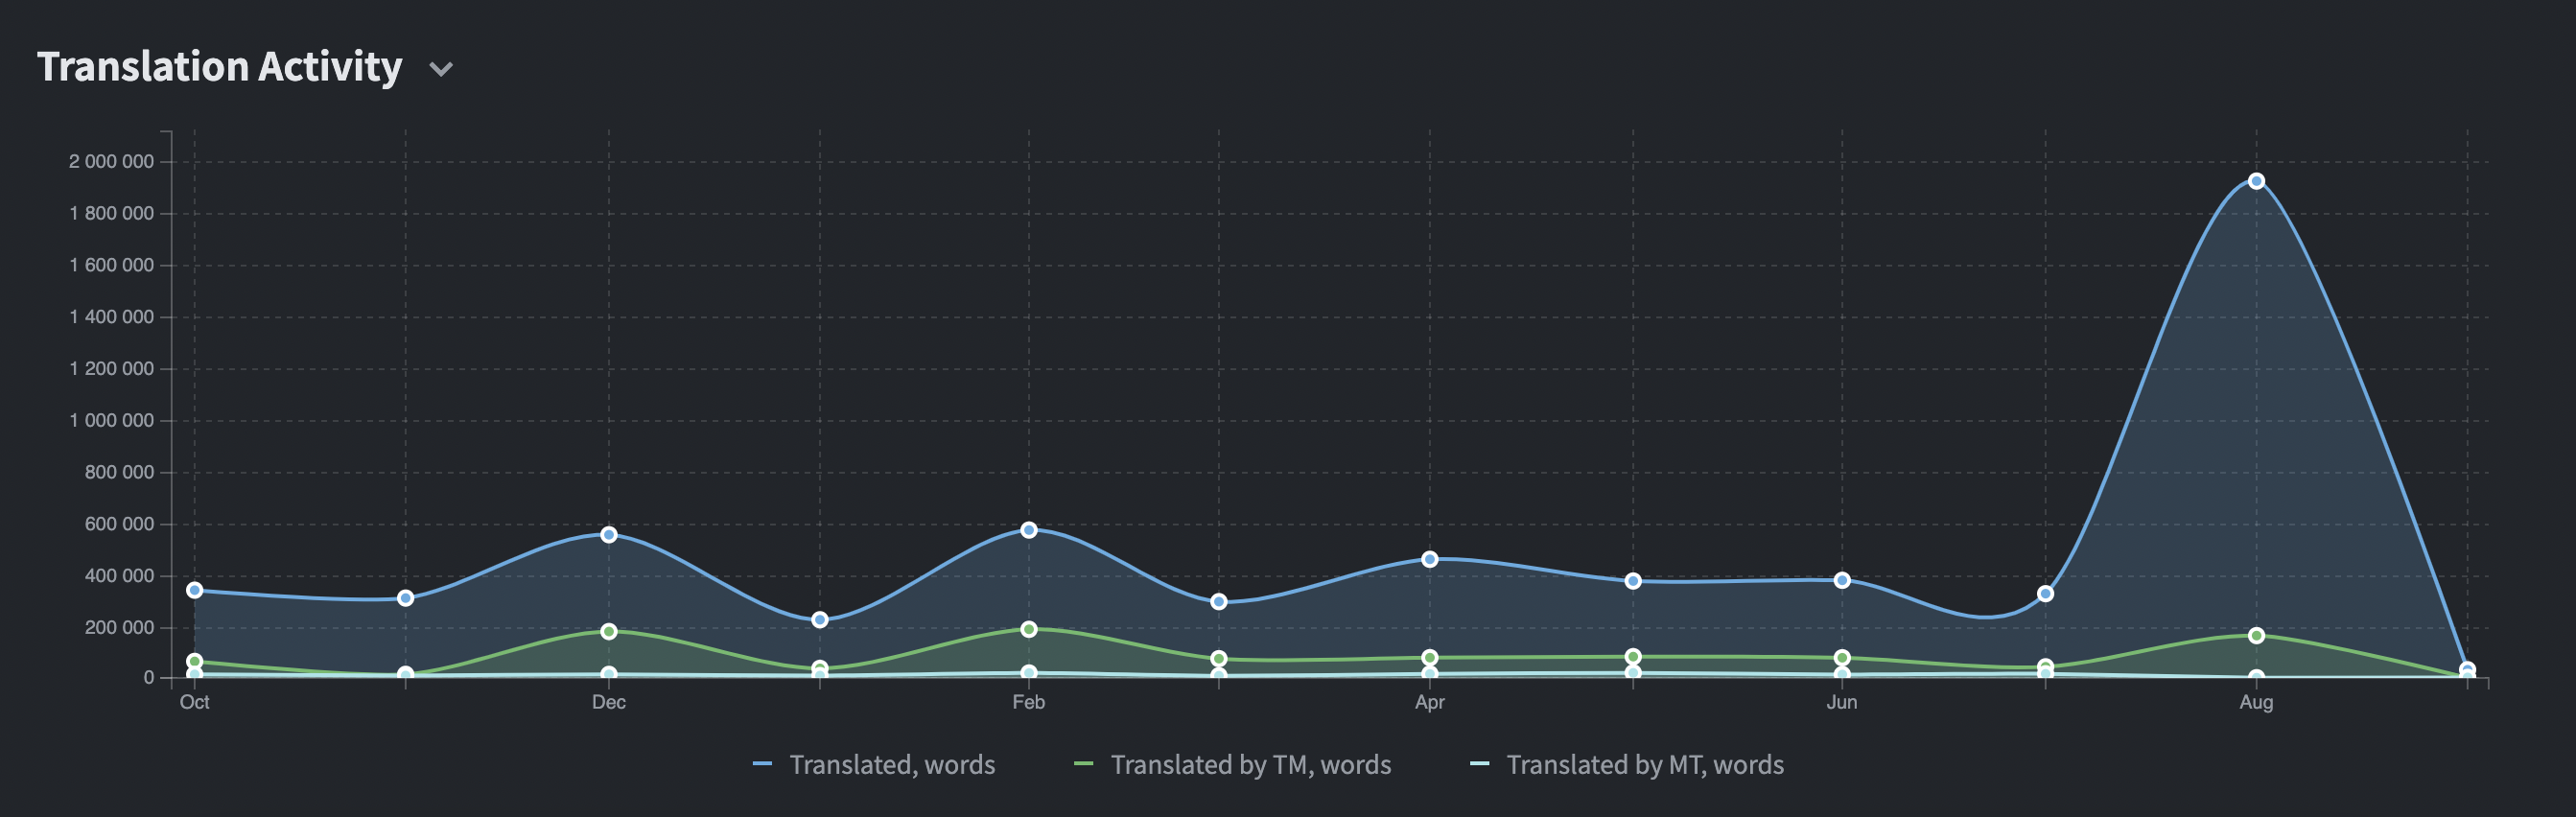 Activité de traduction au cours des 12 derniers mois